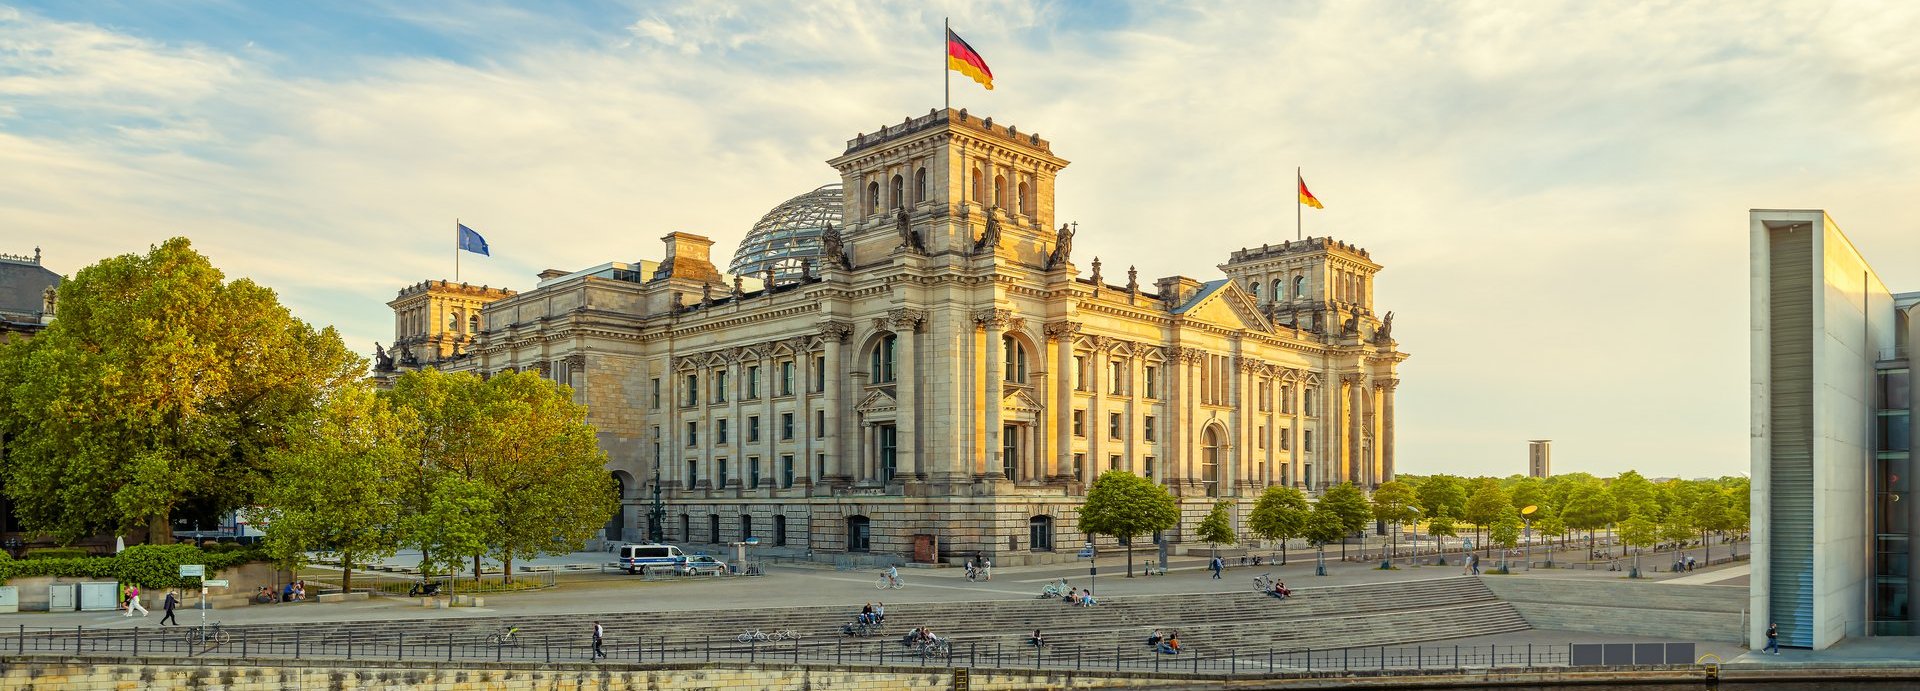 Bundestagsgebäude vom Spreeufer bei goldenem Licht